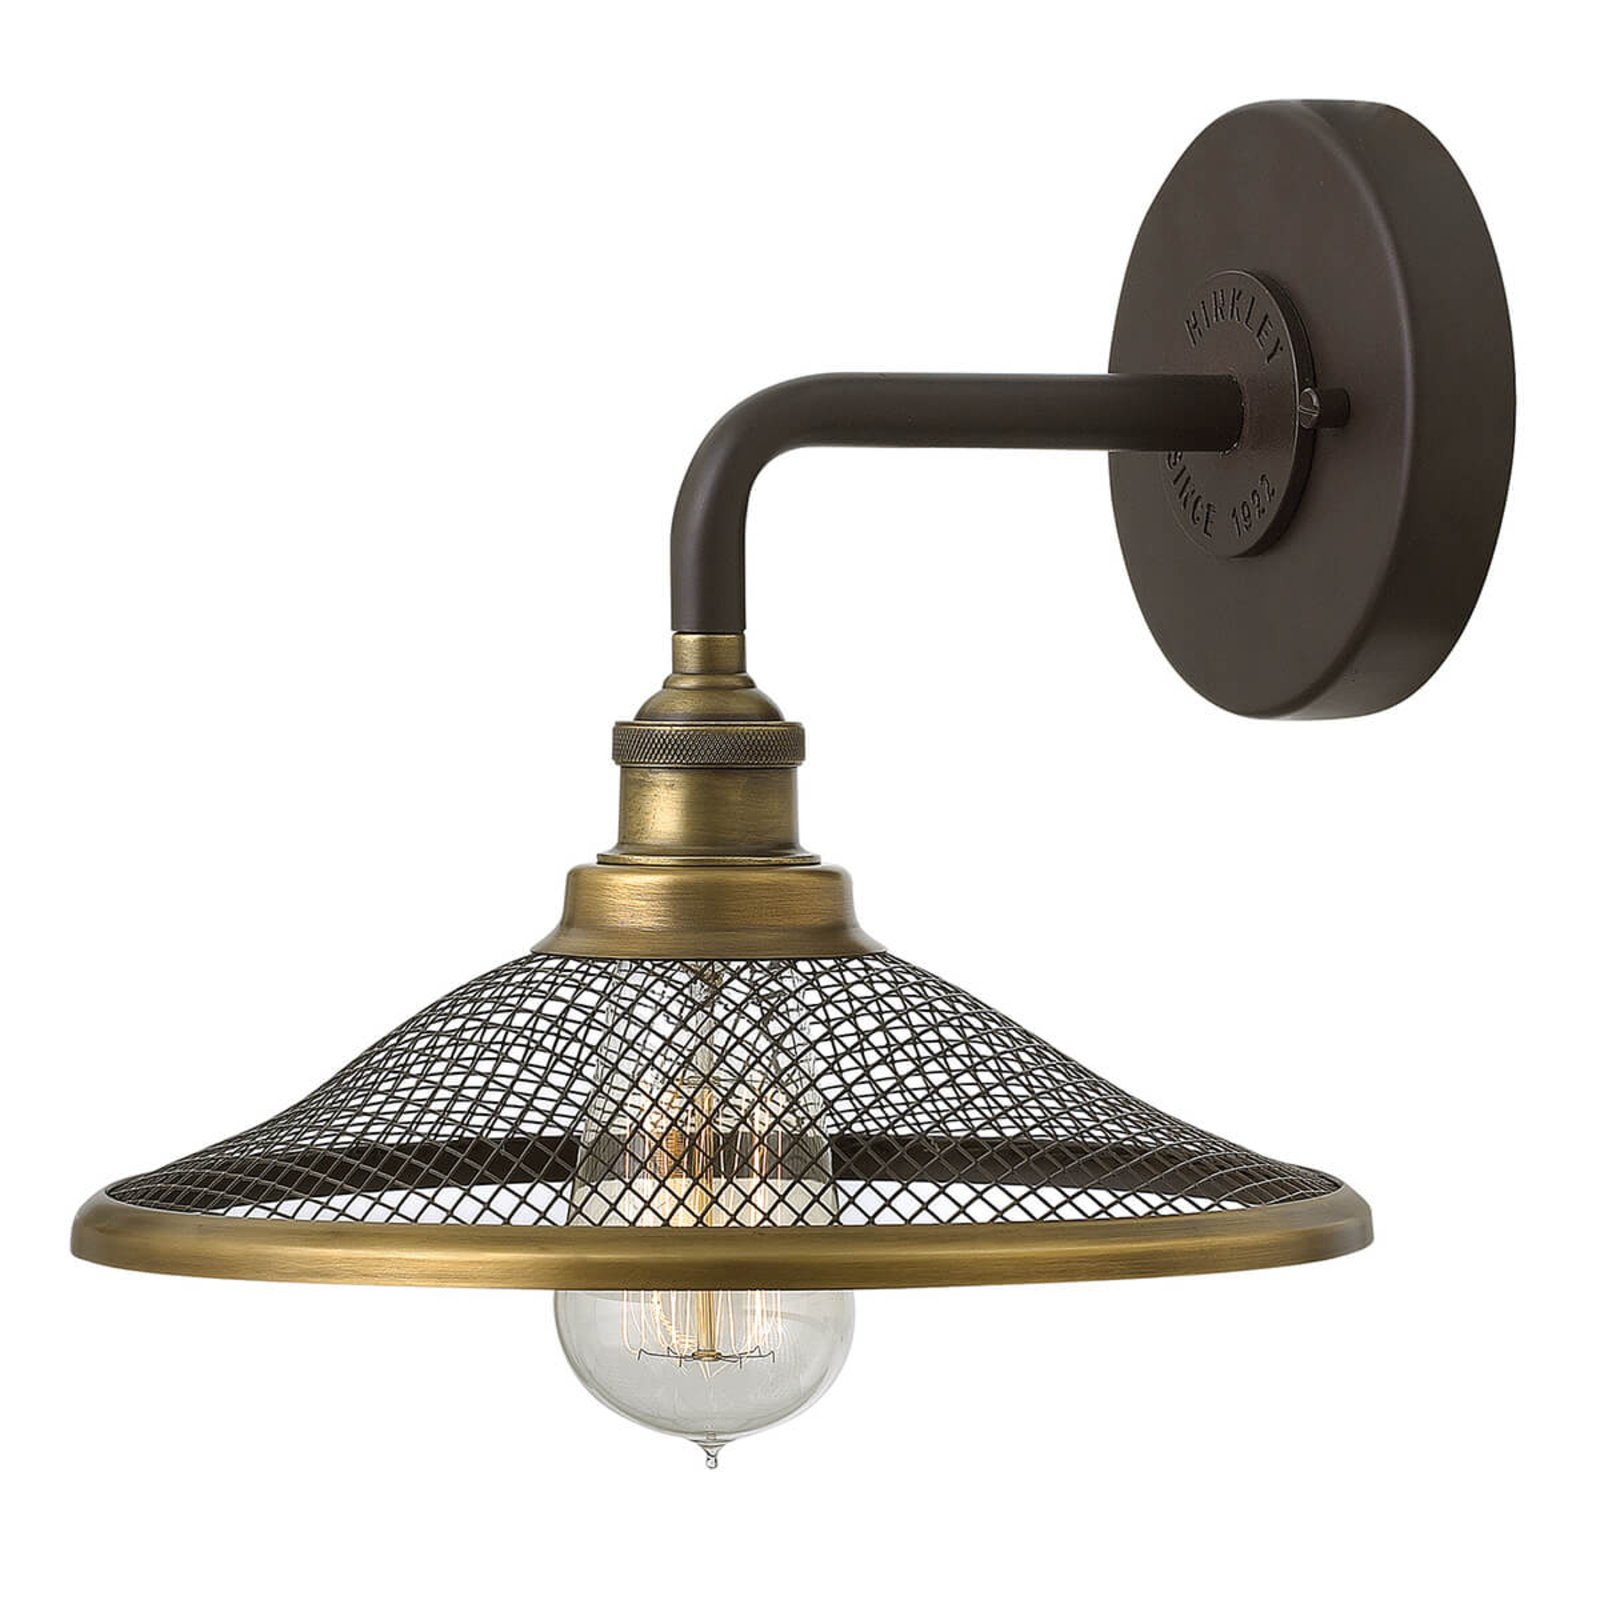 Rigby zidna svjetiljka u industrijskom stilu